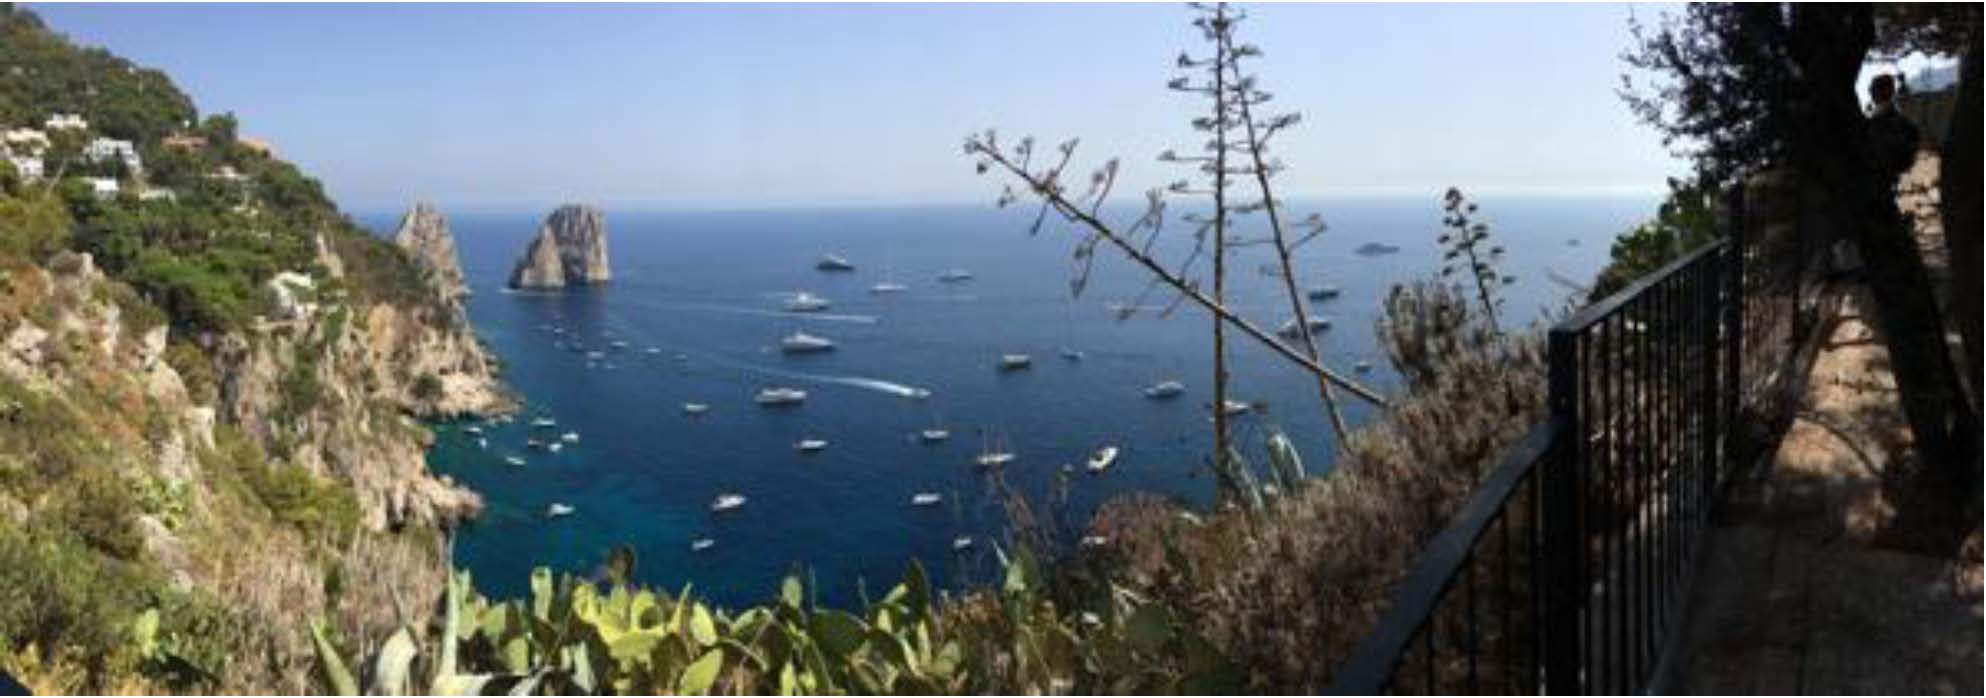 PORTUS-35-Image_01_Seascapes Amalfi and Capri